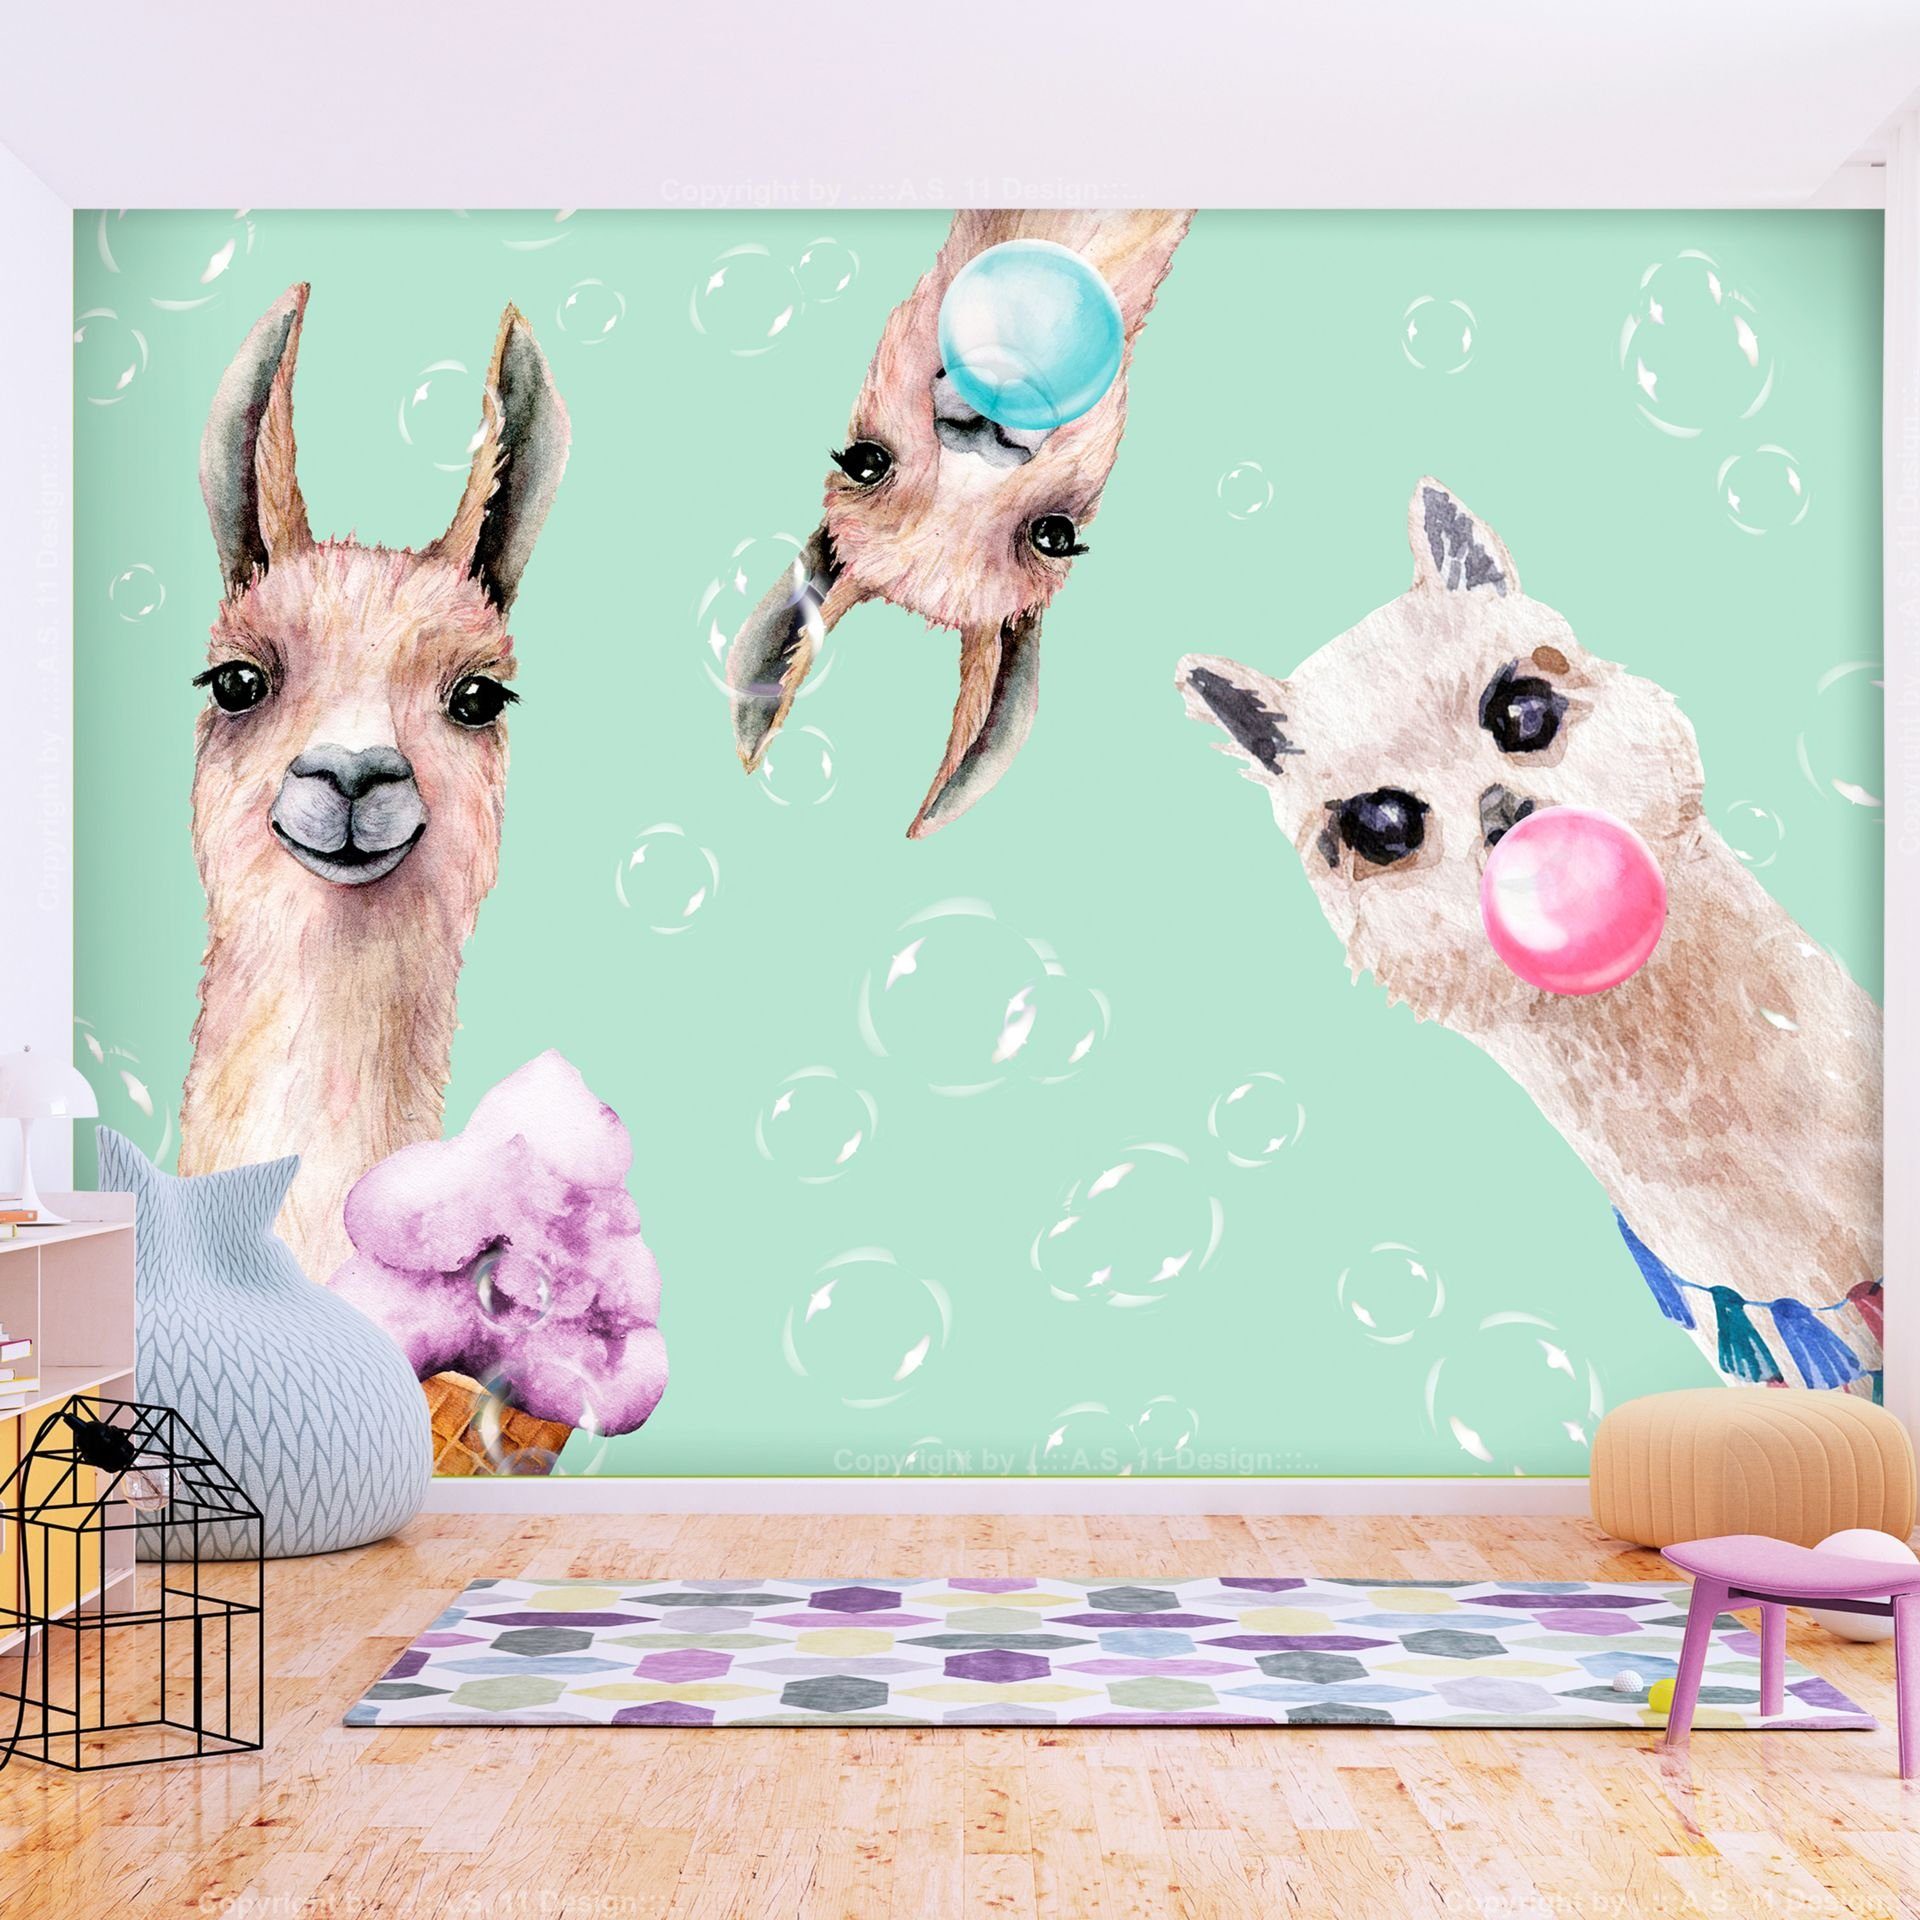 KUNSTLOFT Vliestapete Crazy Llamas 1x0.7 m, halb-matt, lichtbeständige Design Tapete